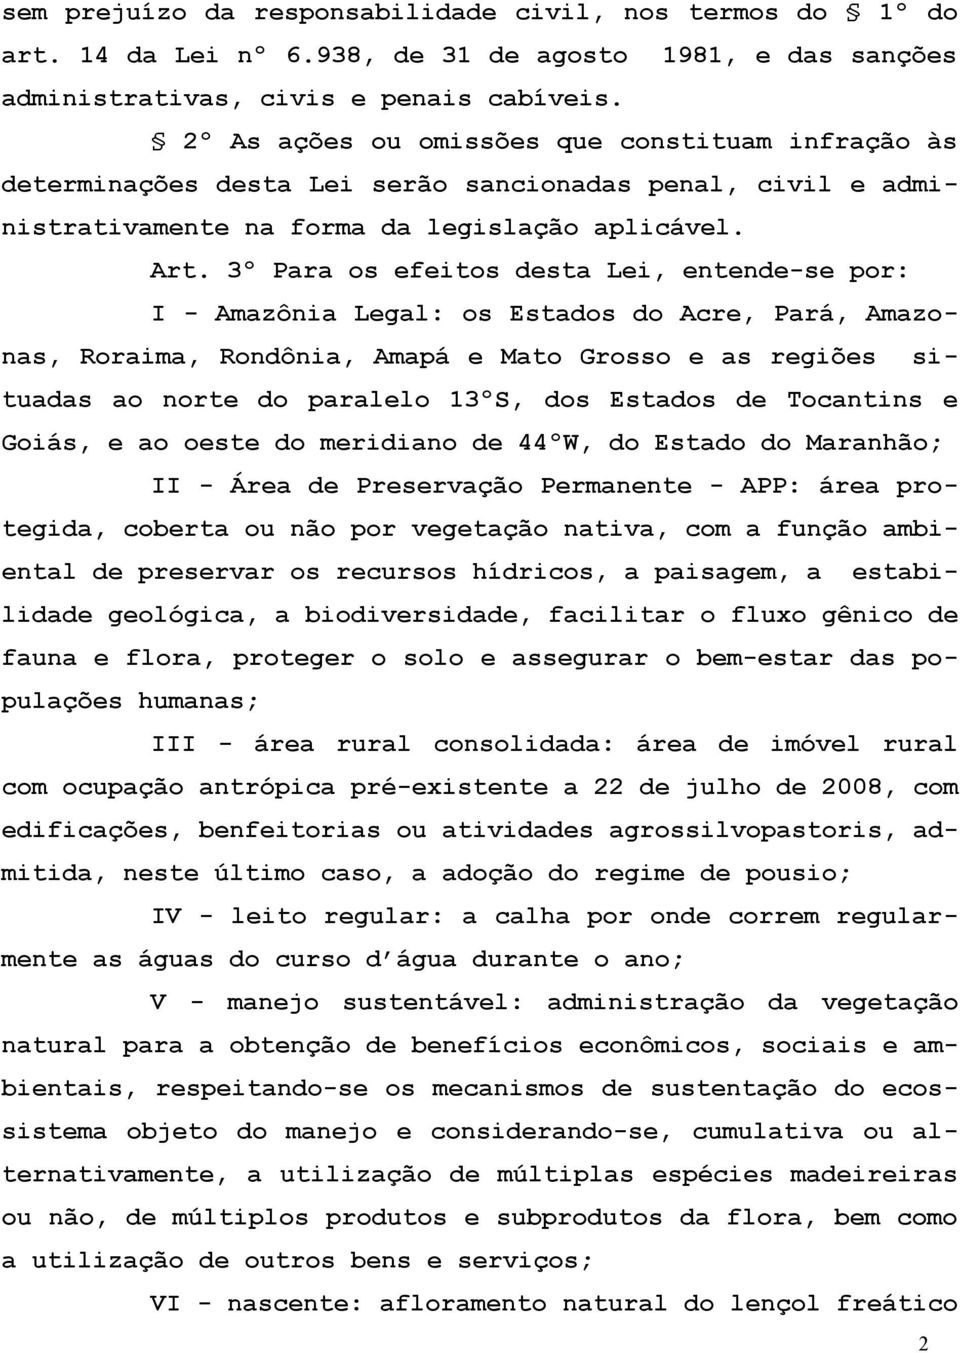 3º Para os efeitos desta Lei, entende-se por: I - Amazônia Legal: os Estados do Acre, Pará, Amazonas, Roraima, Rondônia, Amapá e Mato Grosso e as regiões situadas ao norte do paralelo 13ºS, dos